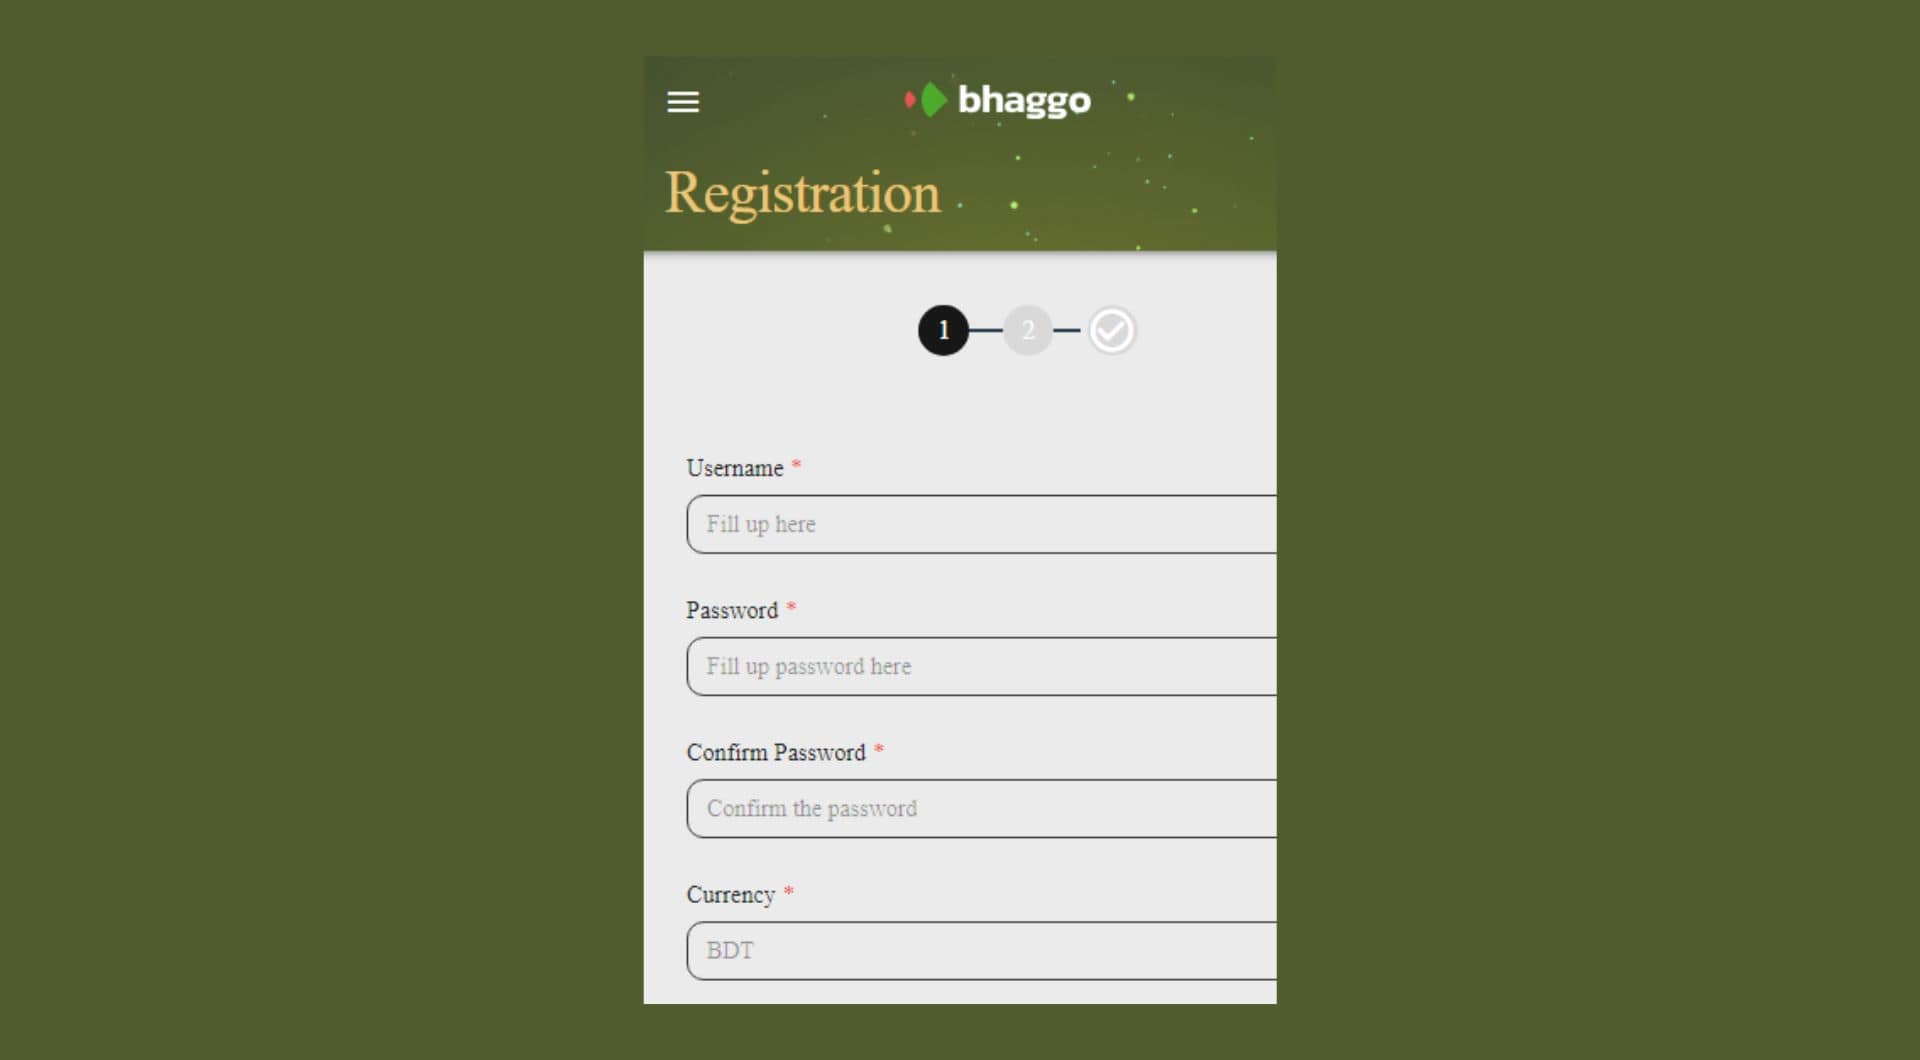 Bhaggo Bangladesh app registration form step